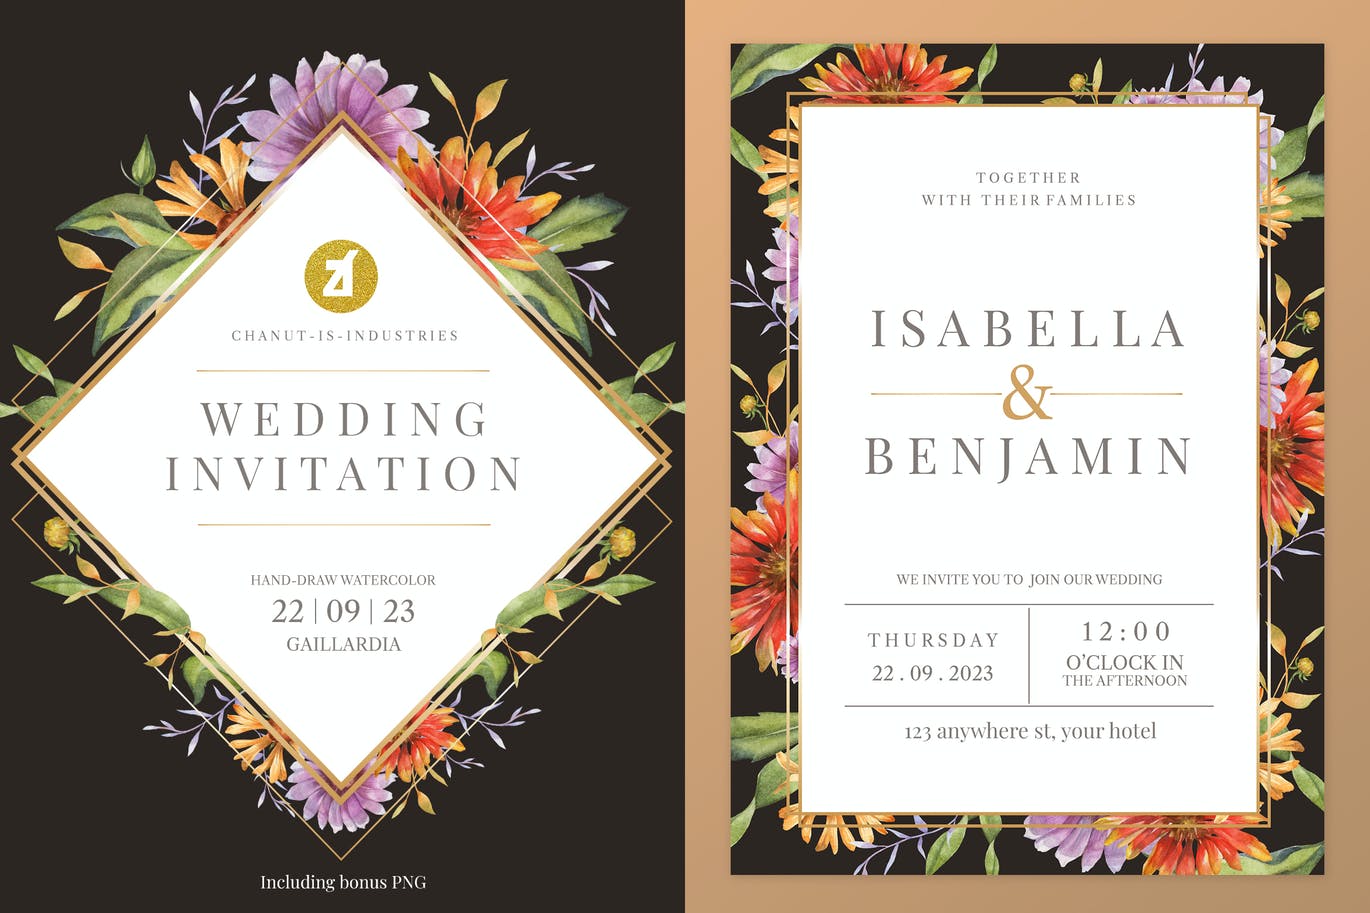 简约手绘水彩风格的花卉花朵植物婚礼请见请帖海报设计模板